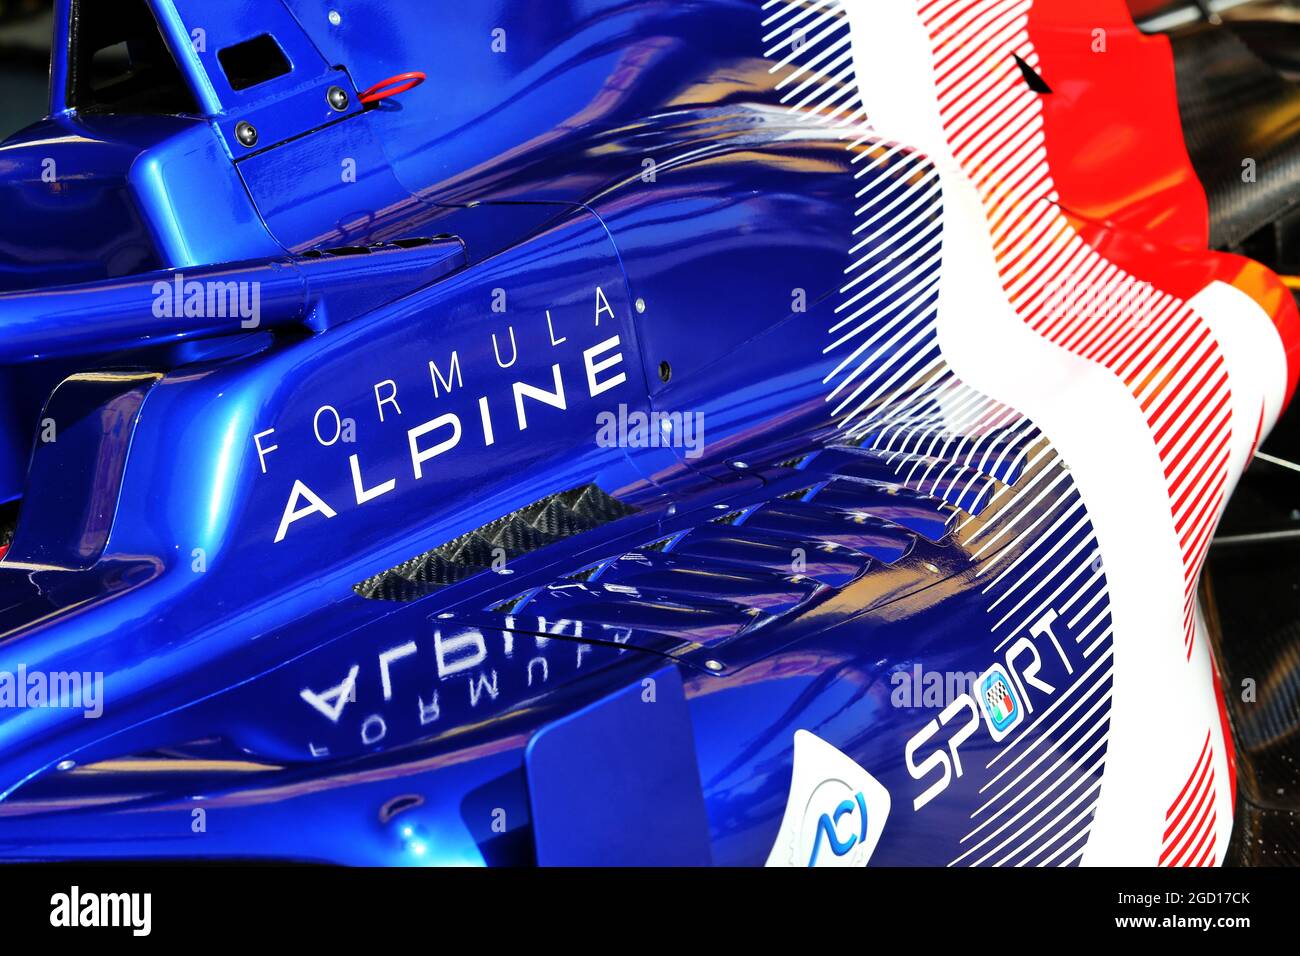 Die von der FIA zertifizierte Formel-Regional-Europameisterschaft von Alpine wird vorgestellt. Großer Preis der Emilia Romagna, Samstag, 31. Oktober 2020. Imola, Italien. Stockfoto